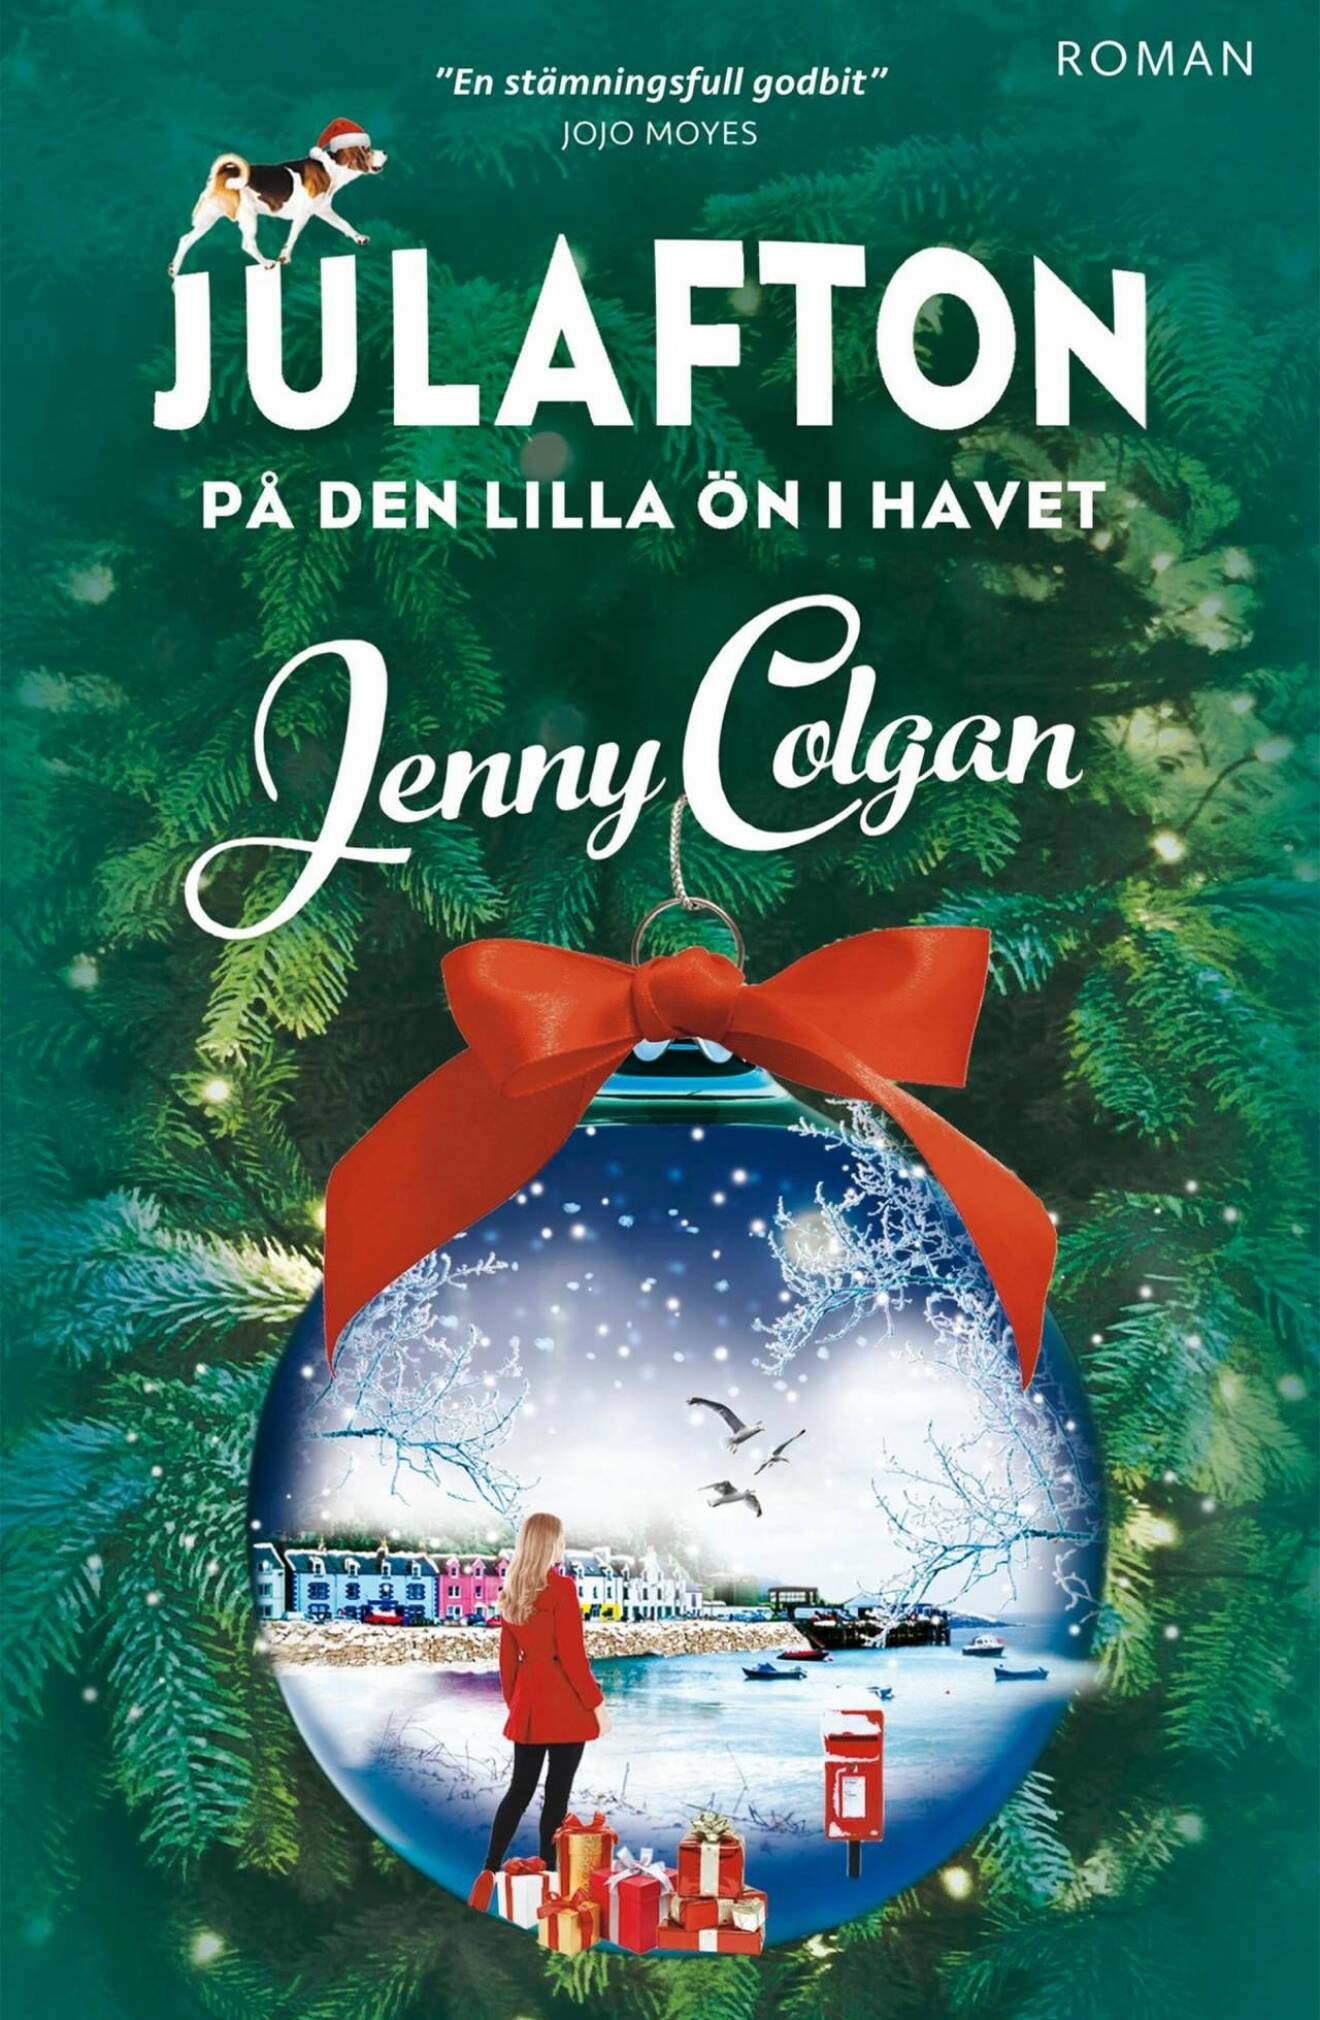 Bokomslag på Jenny Colgans senaste bok Julafton på den lilla ön i havet.